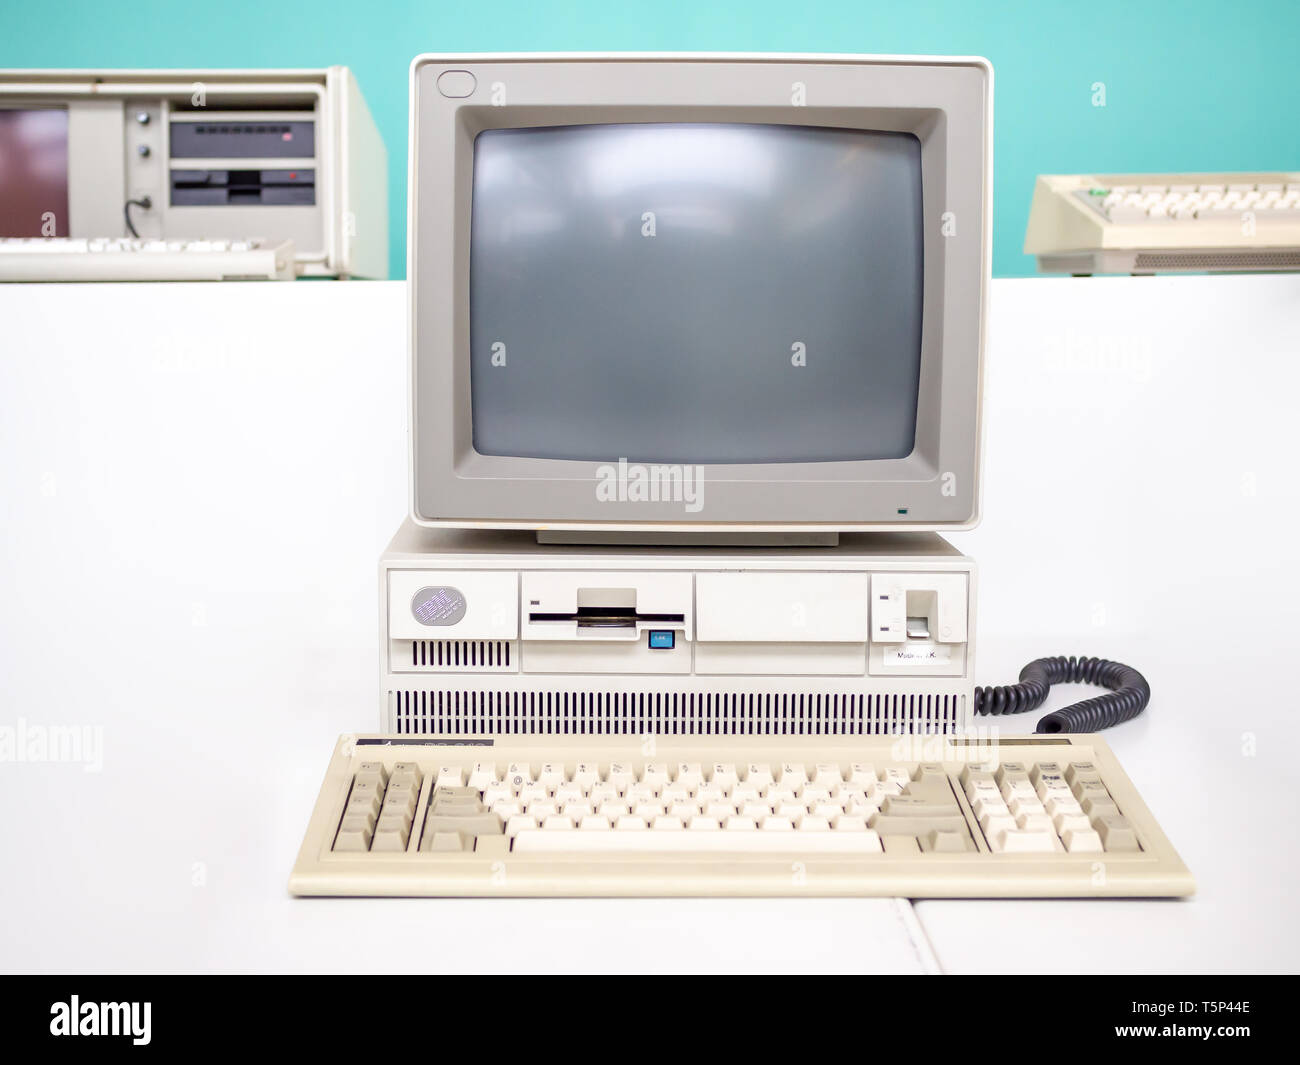 IBM Ancien support en plexi ambré pour écran bureau ordinateur IBM vintage 